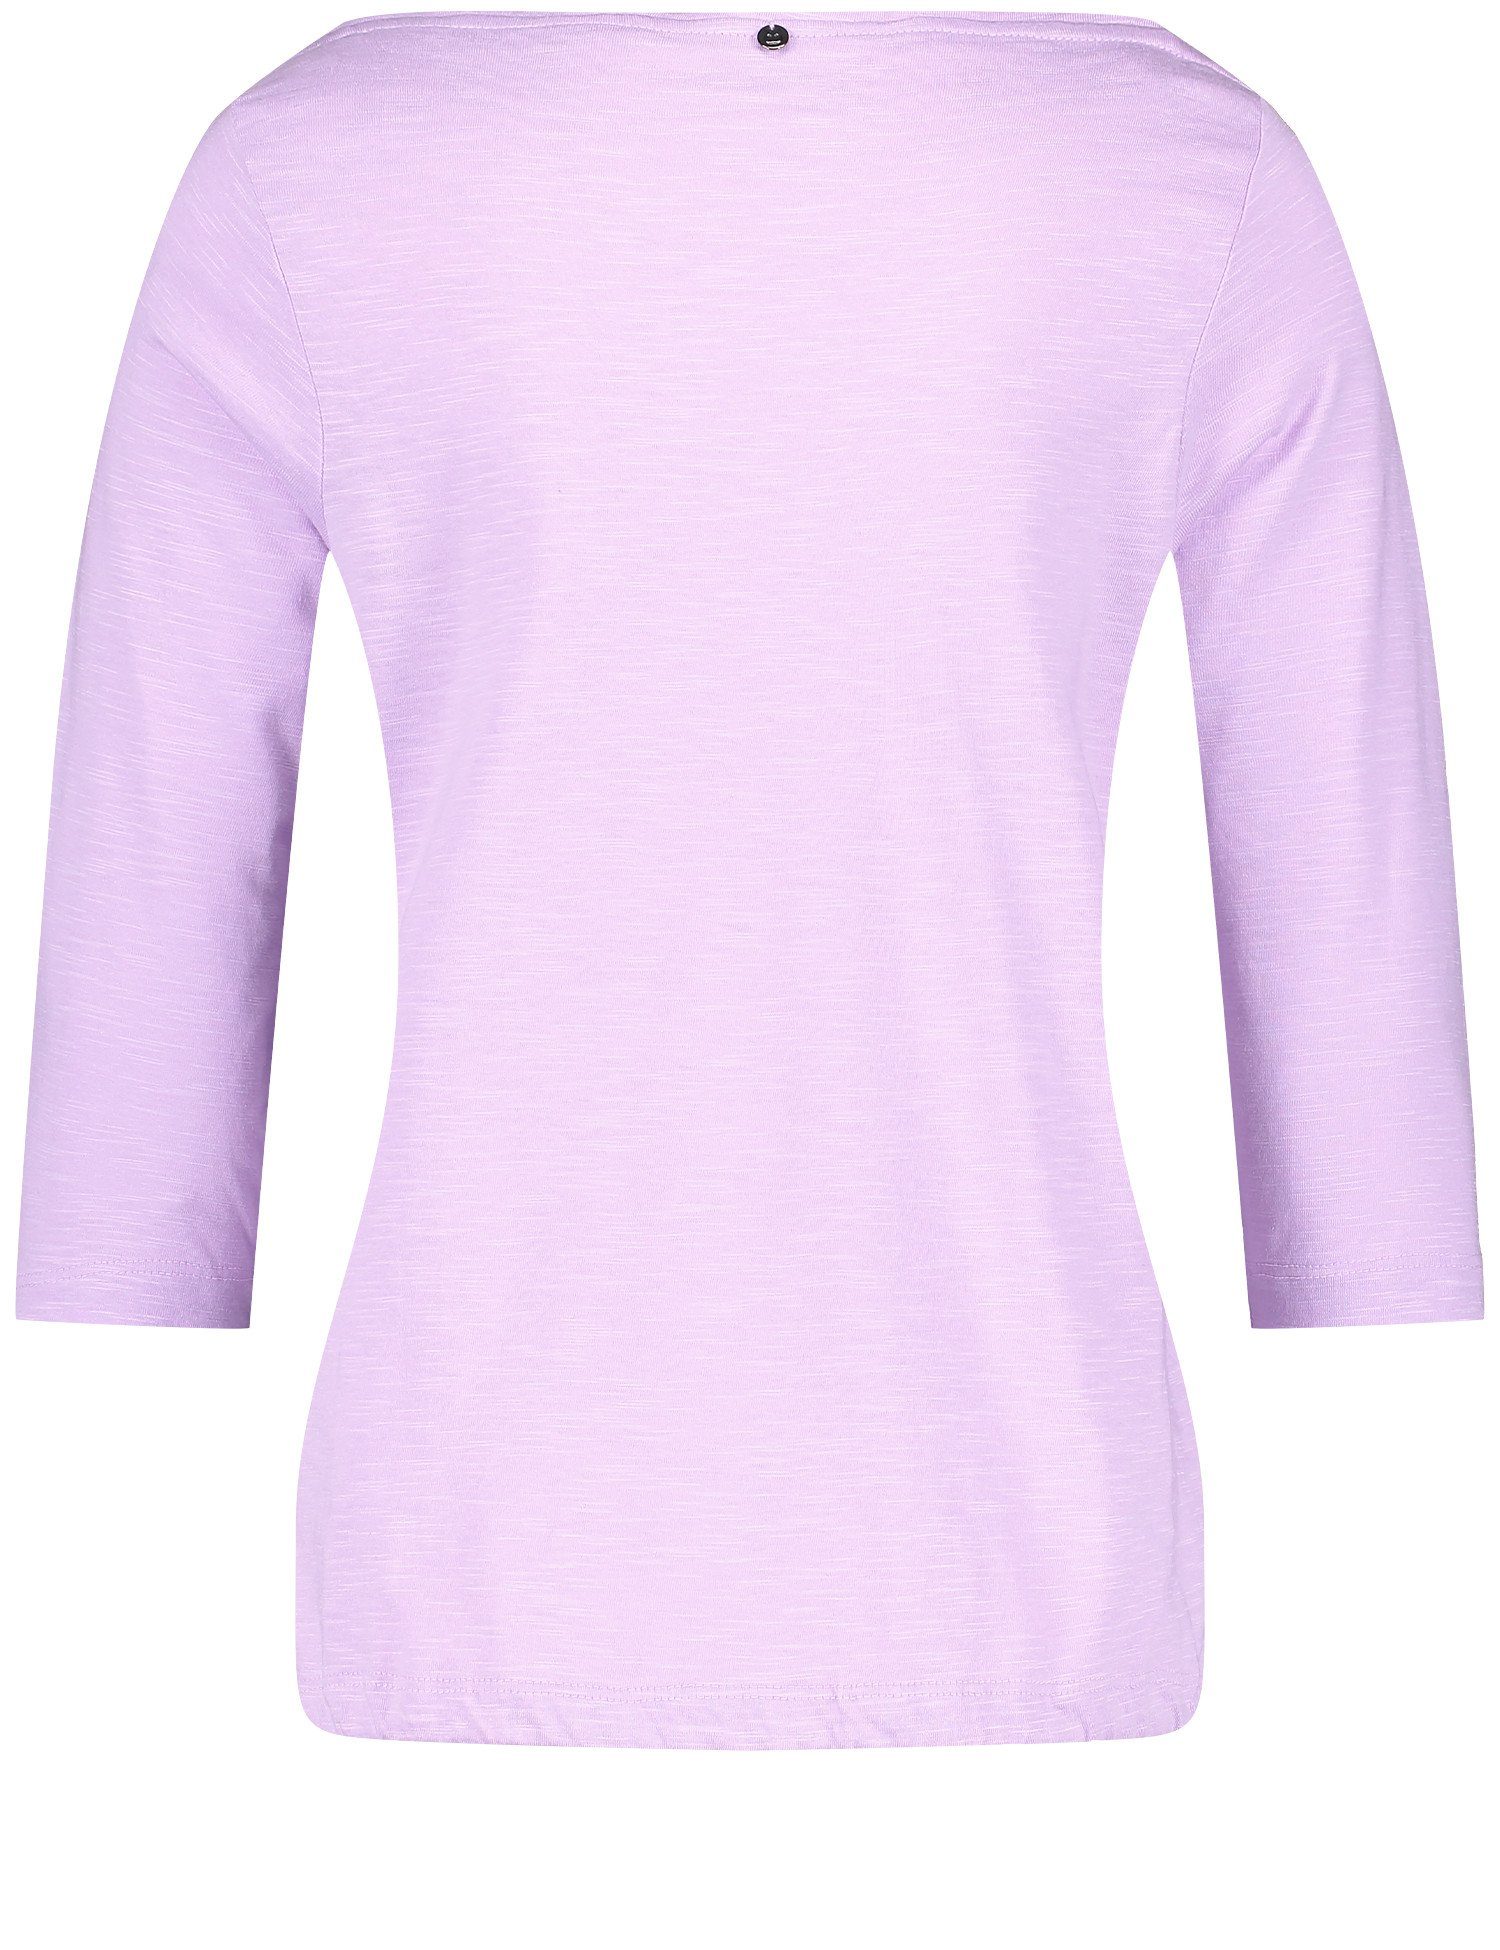 3/4 WEBER Arm 3/4-Arm-Shirt GERRY mit Lilac U-Bootausschnitt Shirt